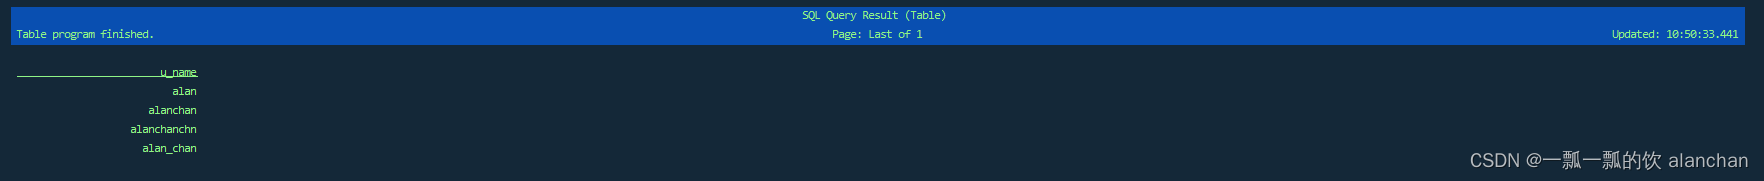 20、Flink SQL之SQL Client: 不用编写代码就可以尝试 Flink SQL，可以直接提交 SQL 任务到集群上